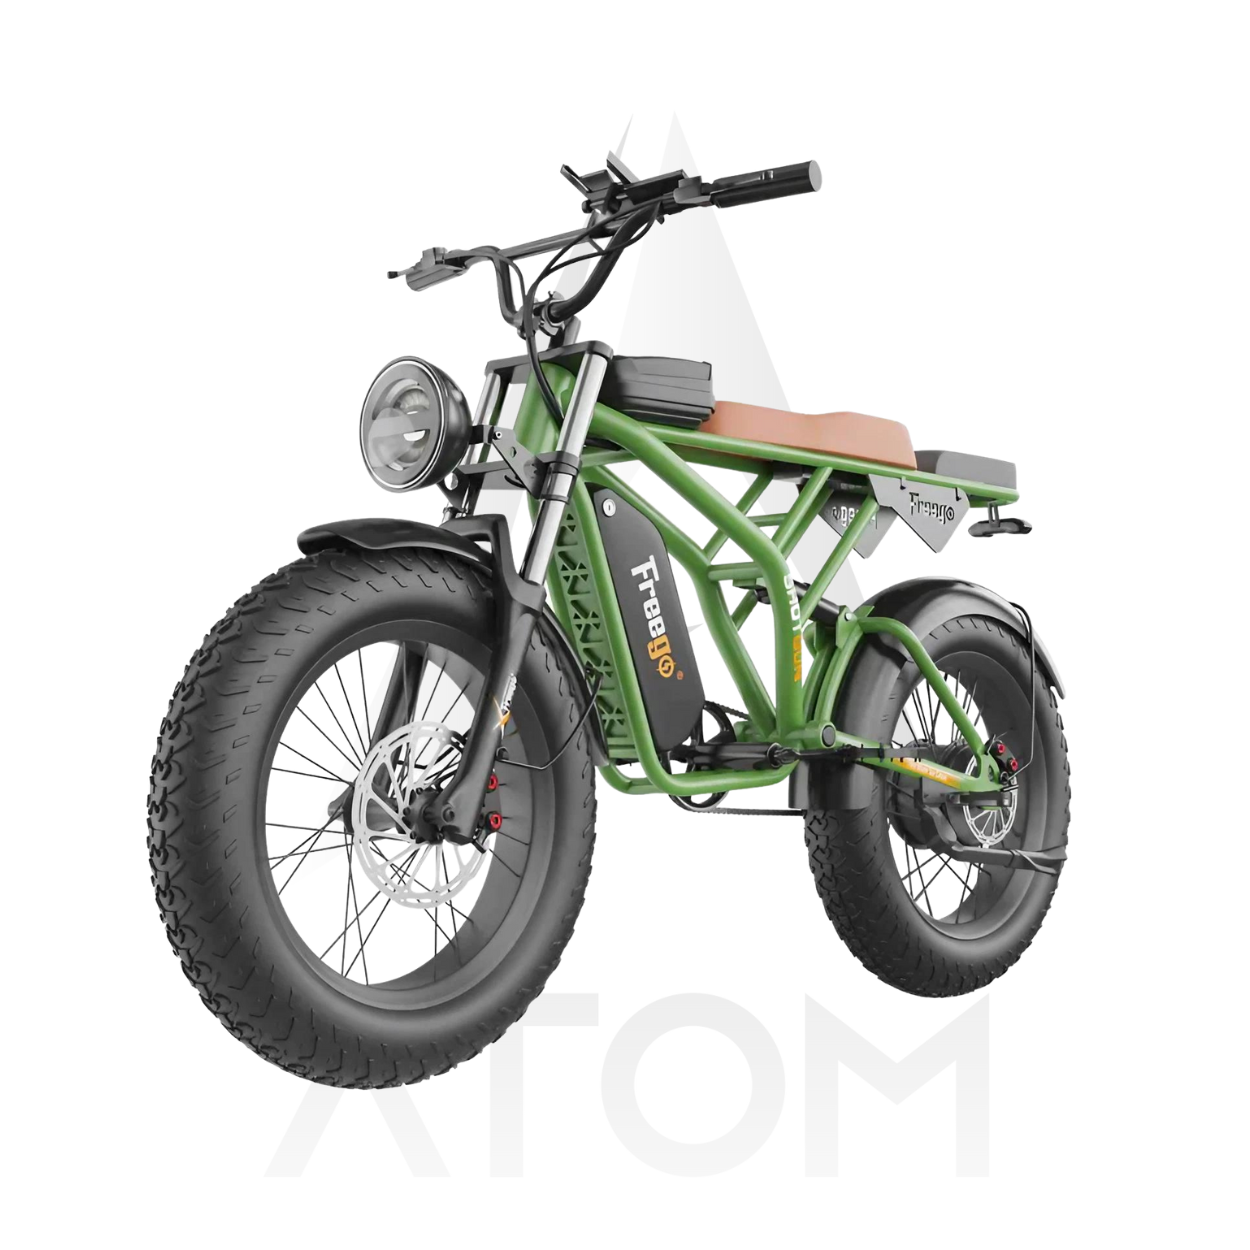 Vélo électrique Fatbike | FREEGO F2 PRO | 1400 W - Atom Motors